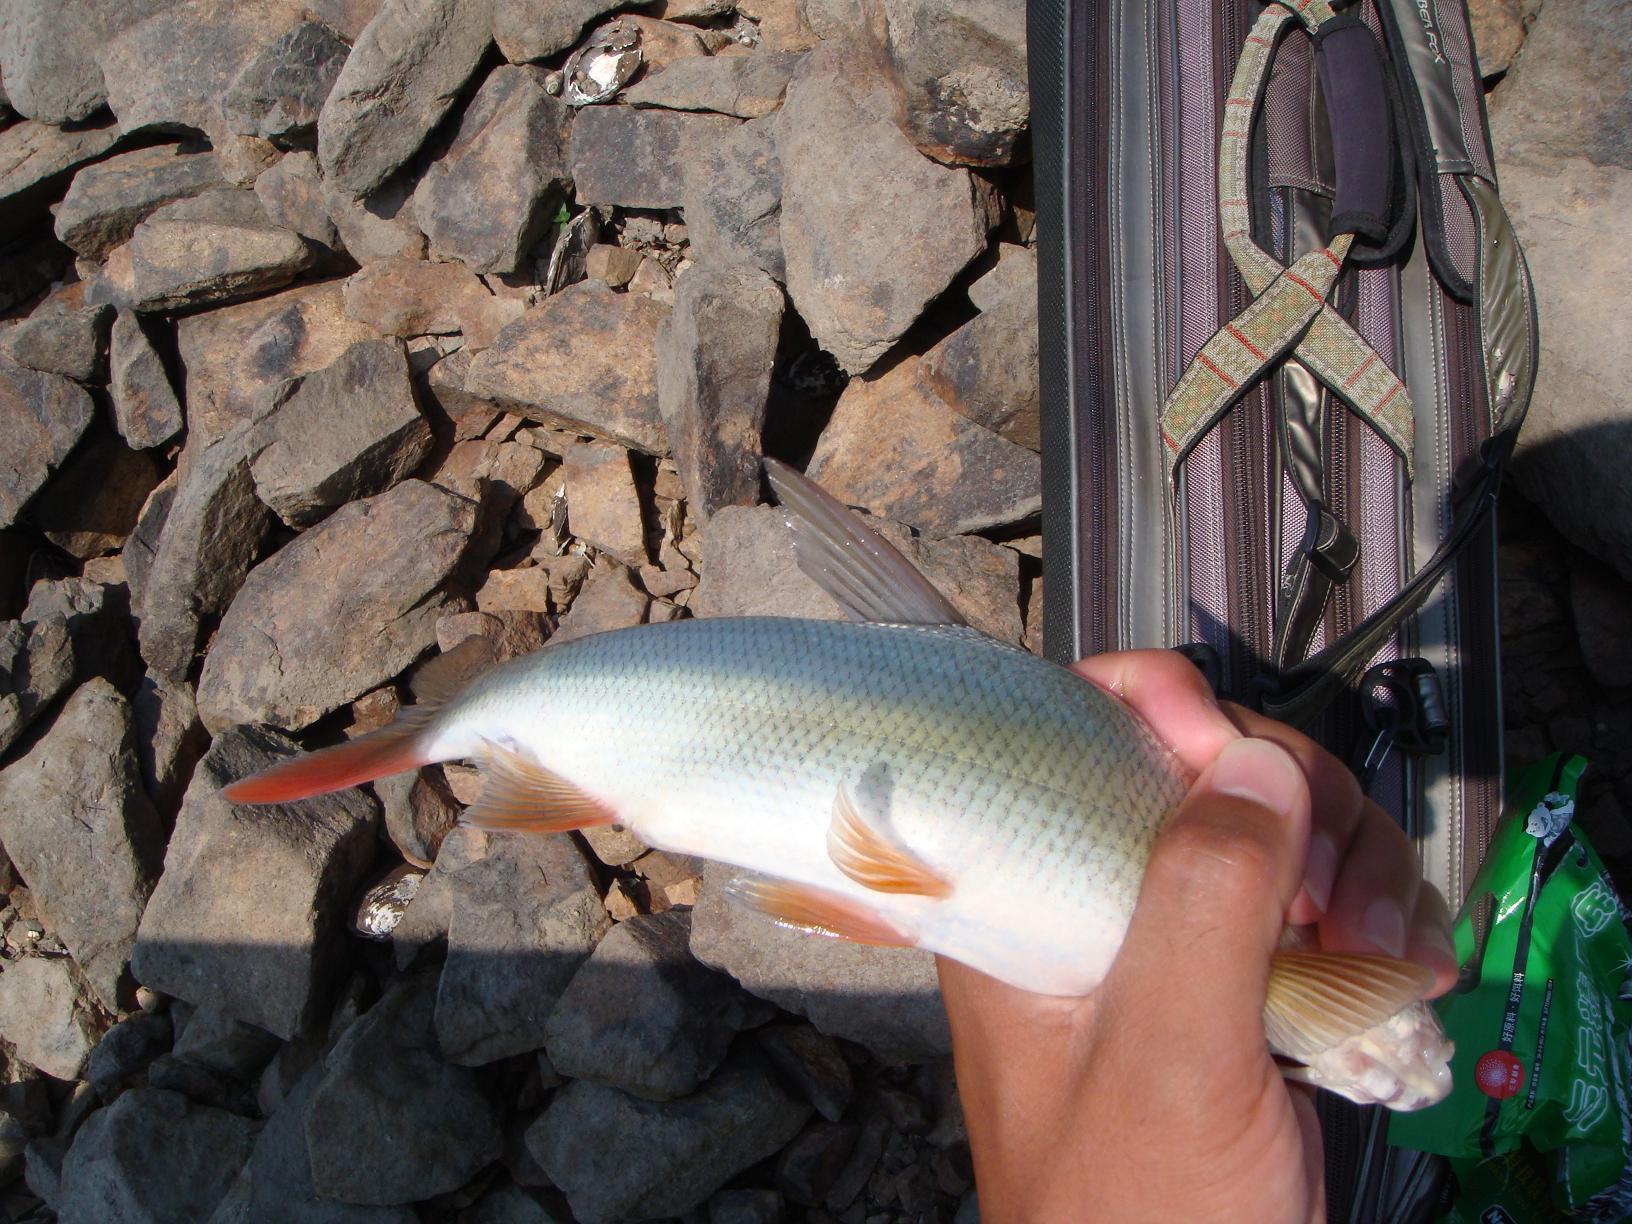 40元一斤的红尾鱼,终于摸索出钓获它的门道